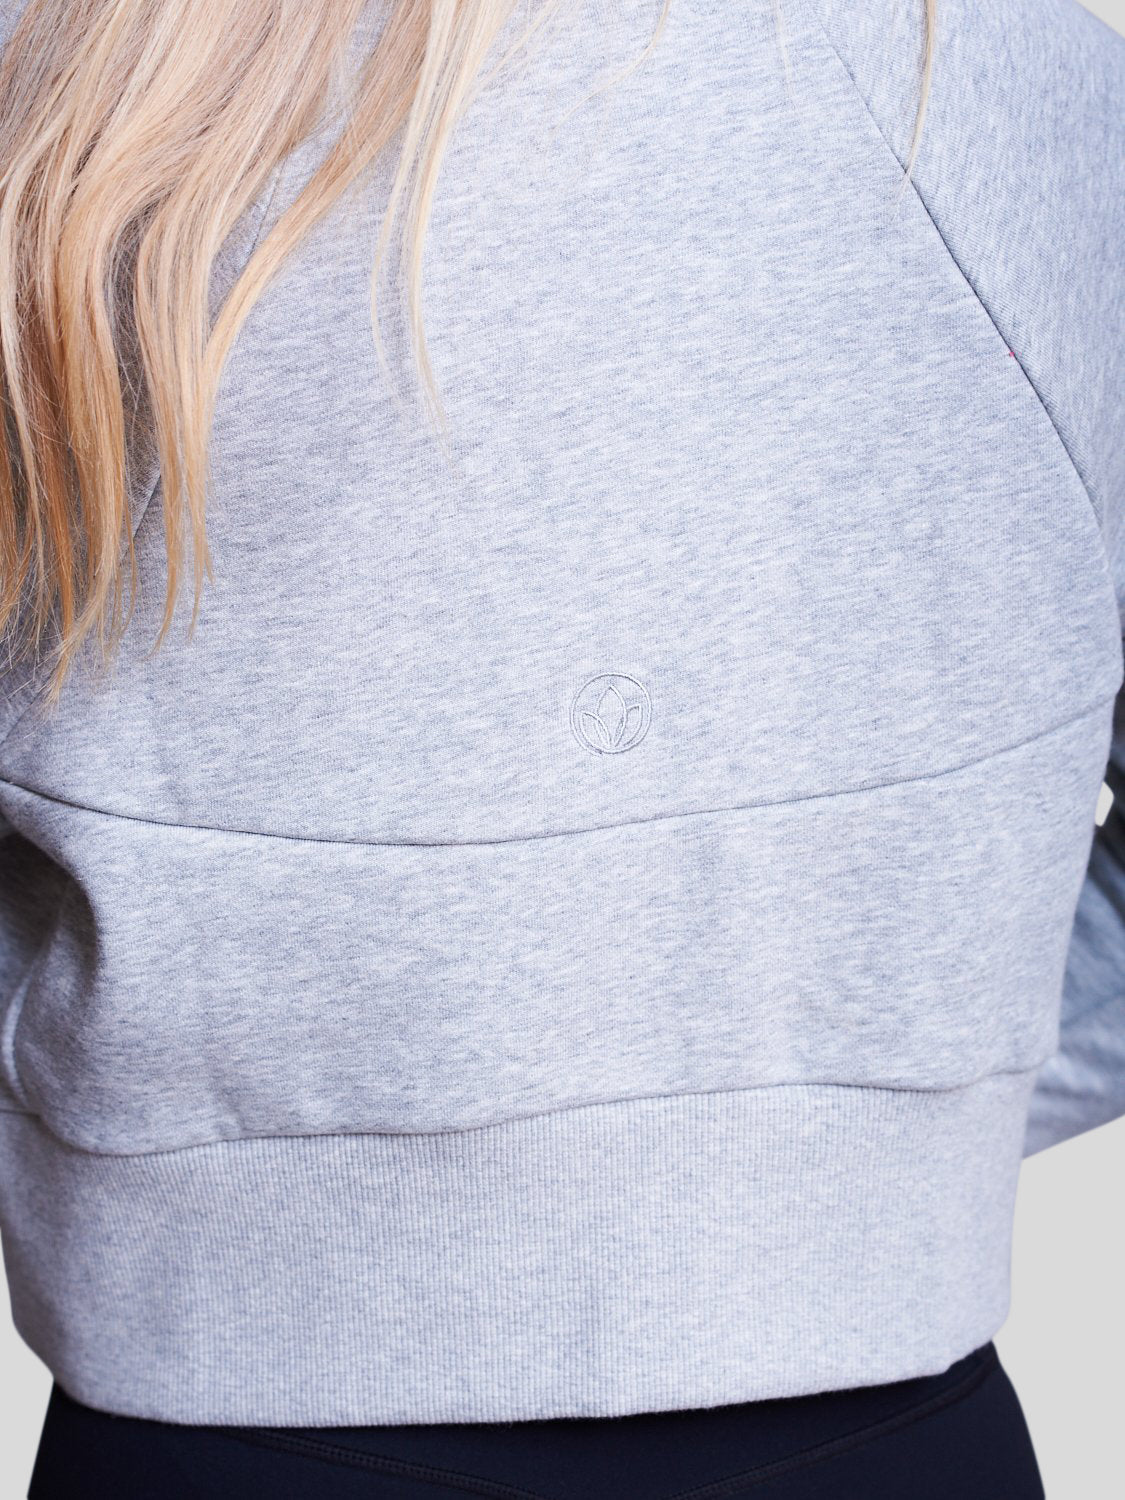 grå sweatshirt med eyda logo bagpå